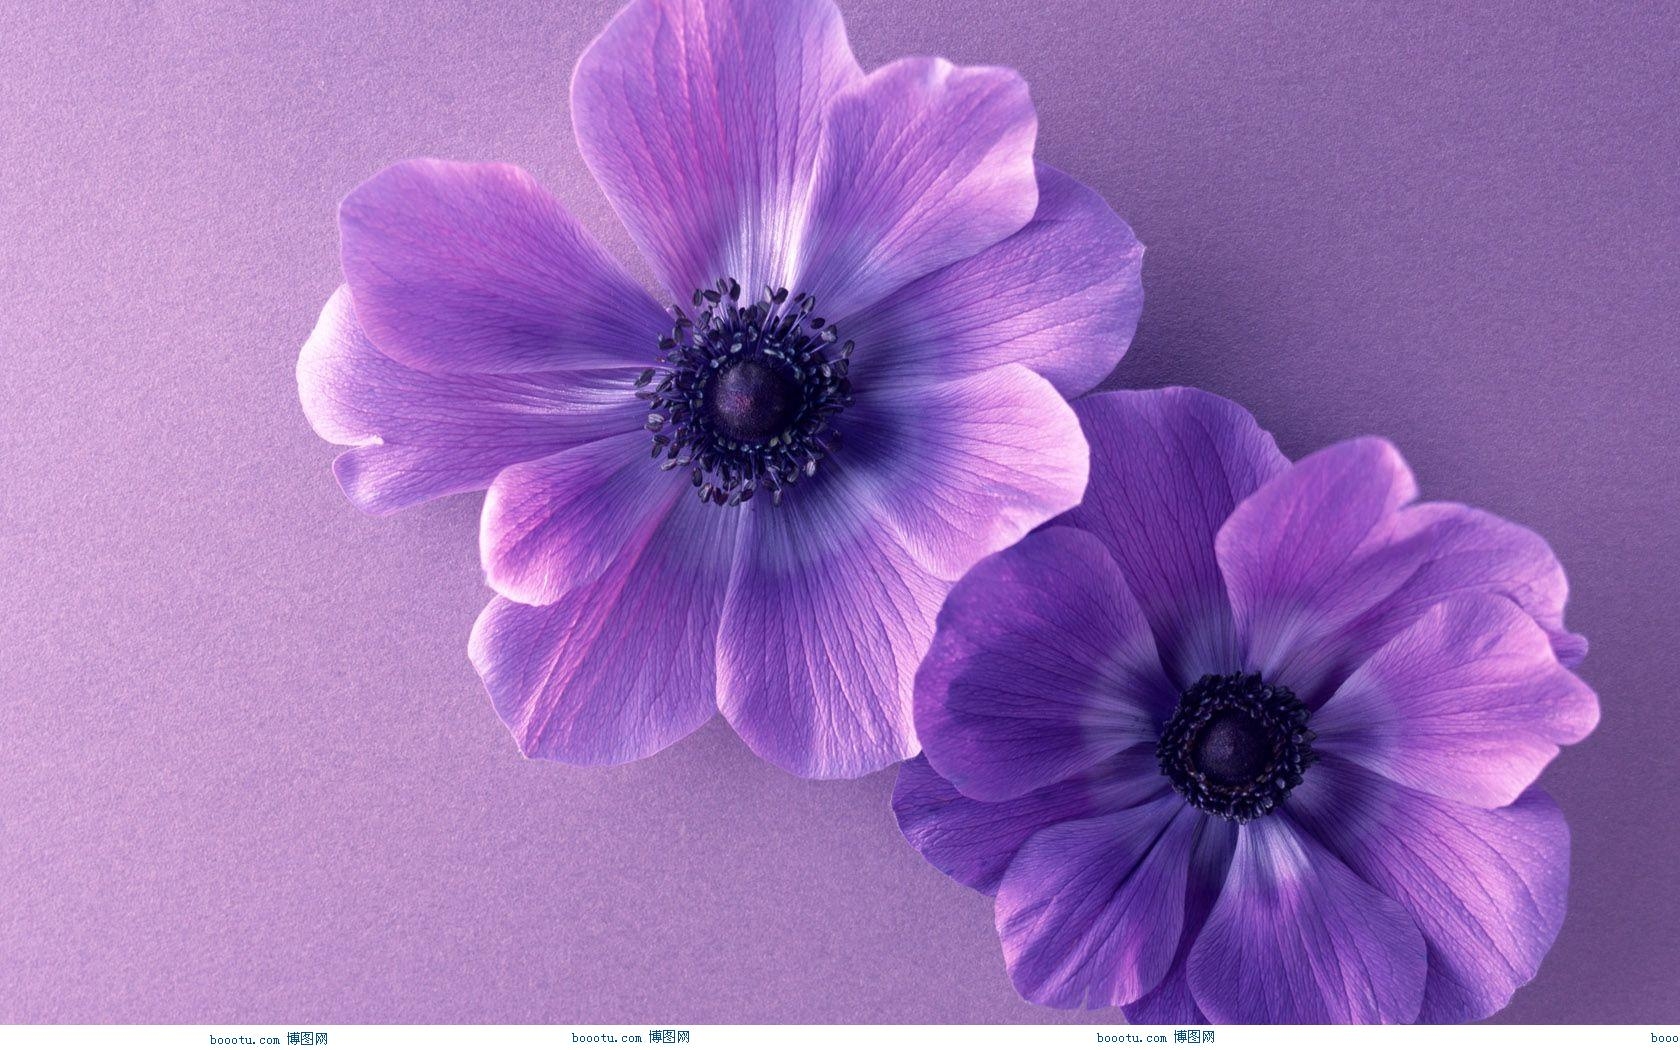 hd wallpapers purple flower wallpaper border desktop